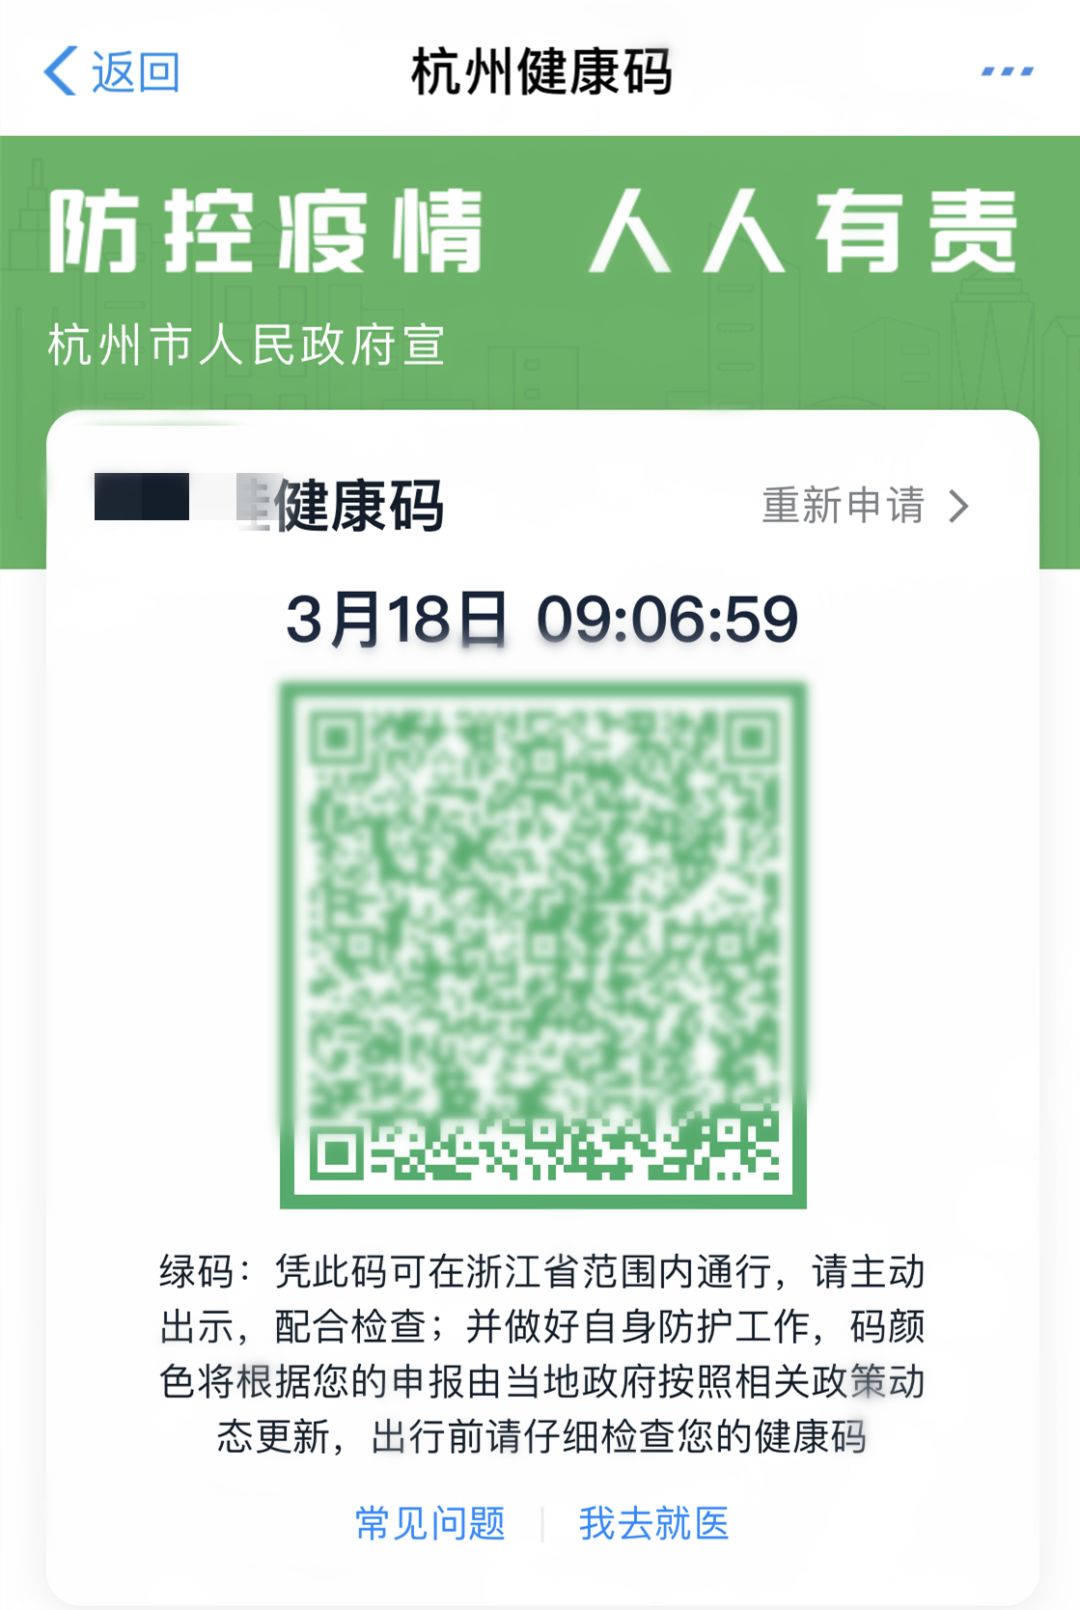 最近杭州萧山就有一名男子,利用检查二维码的职务之便,盗刷了别人5